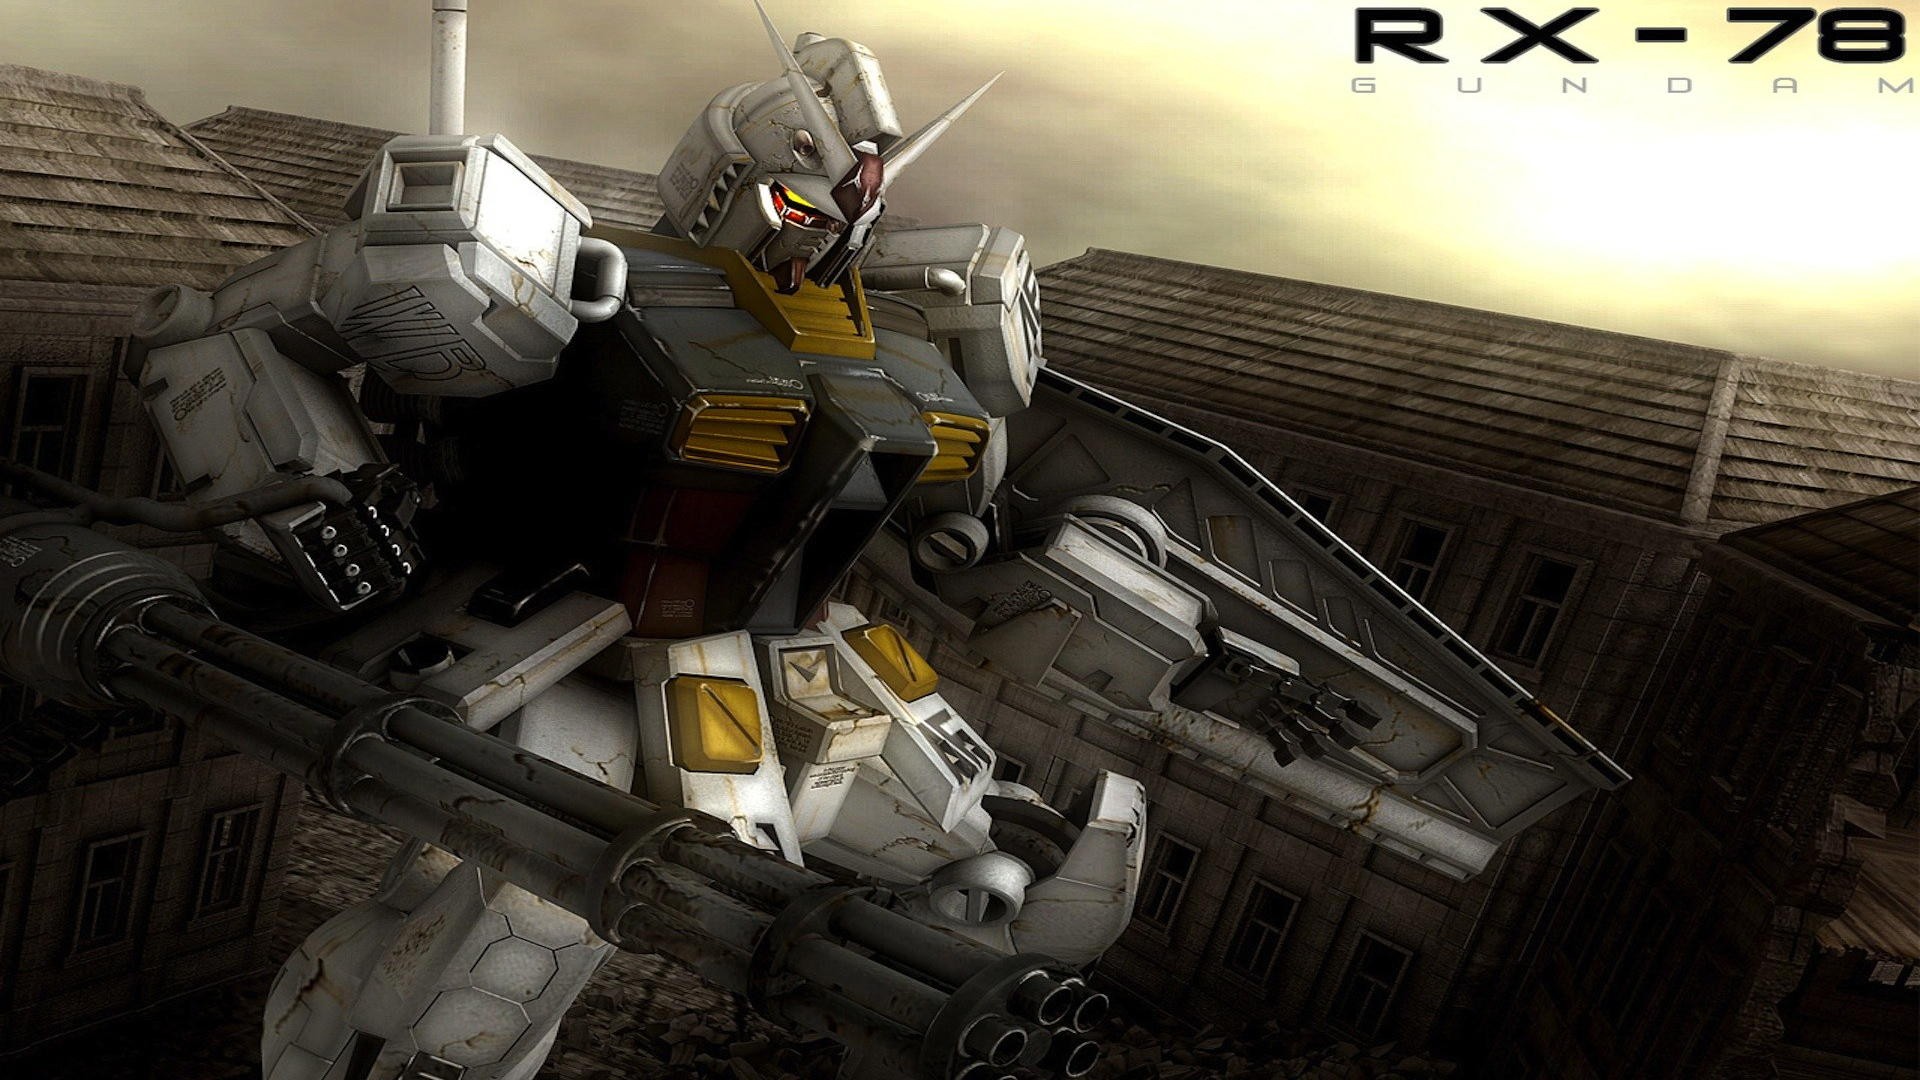 Mech Gundam Robot RX 78 Gundam 1920x1080